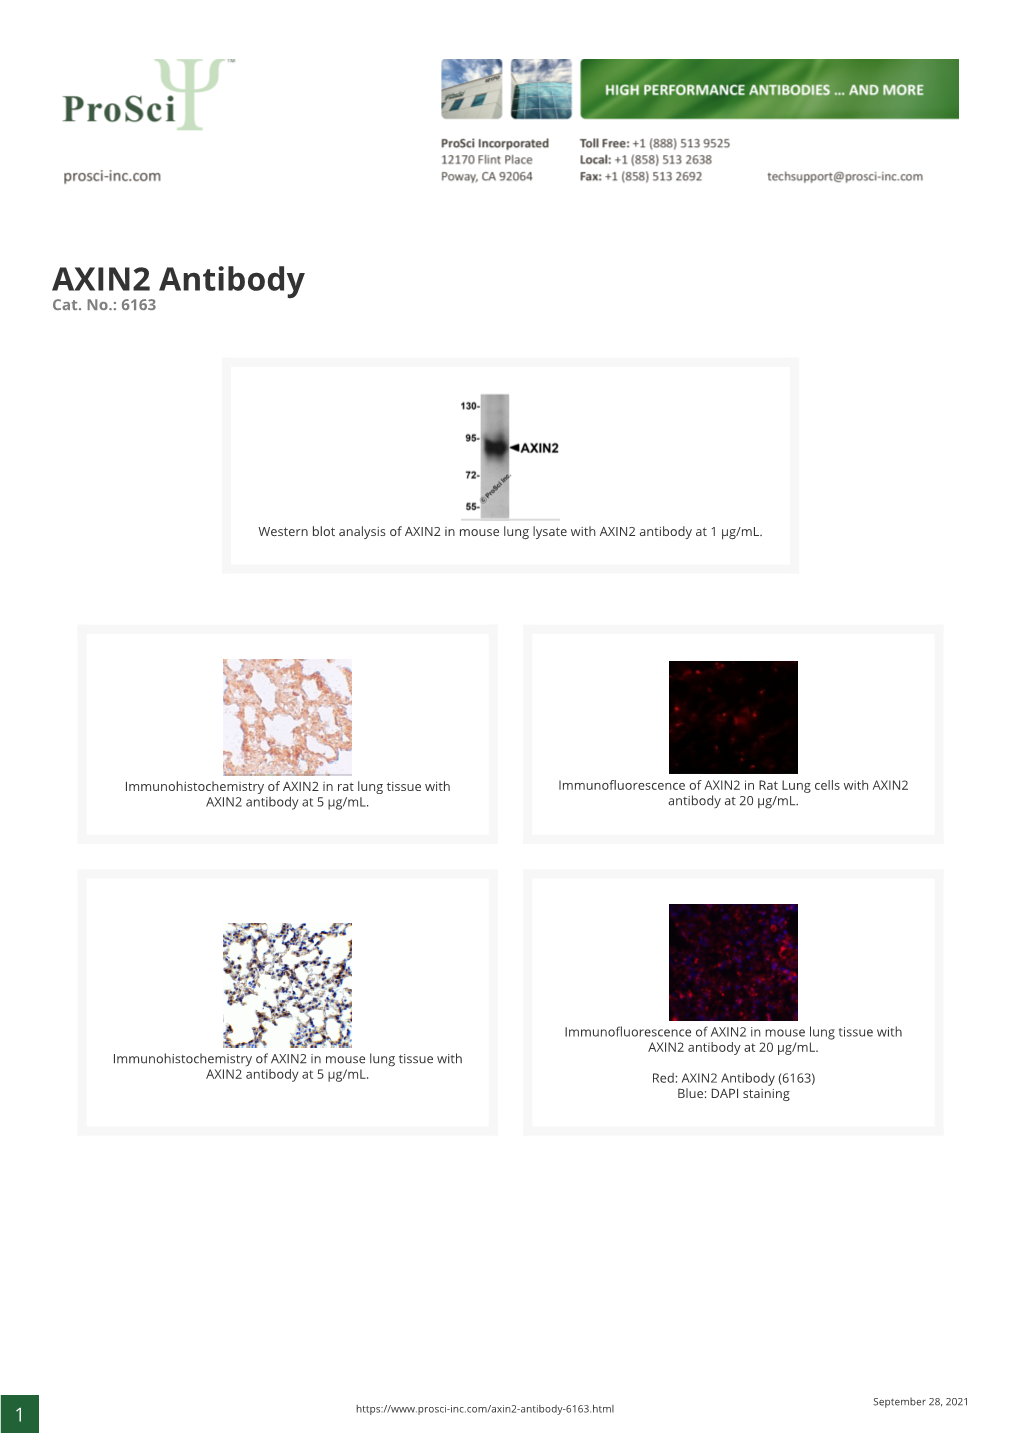 AXIN2 Antibody Cat